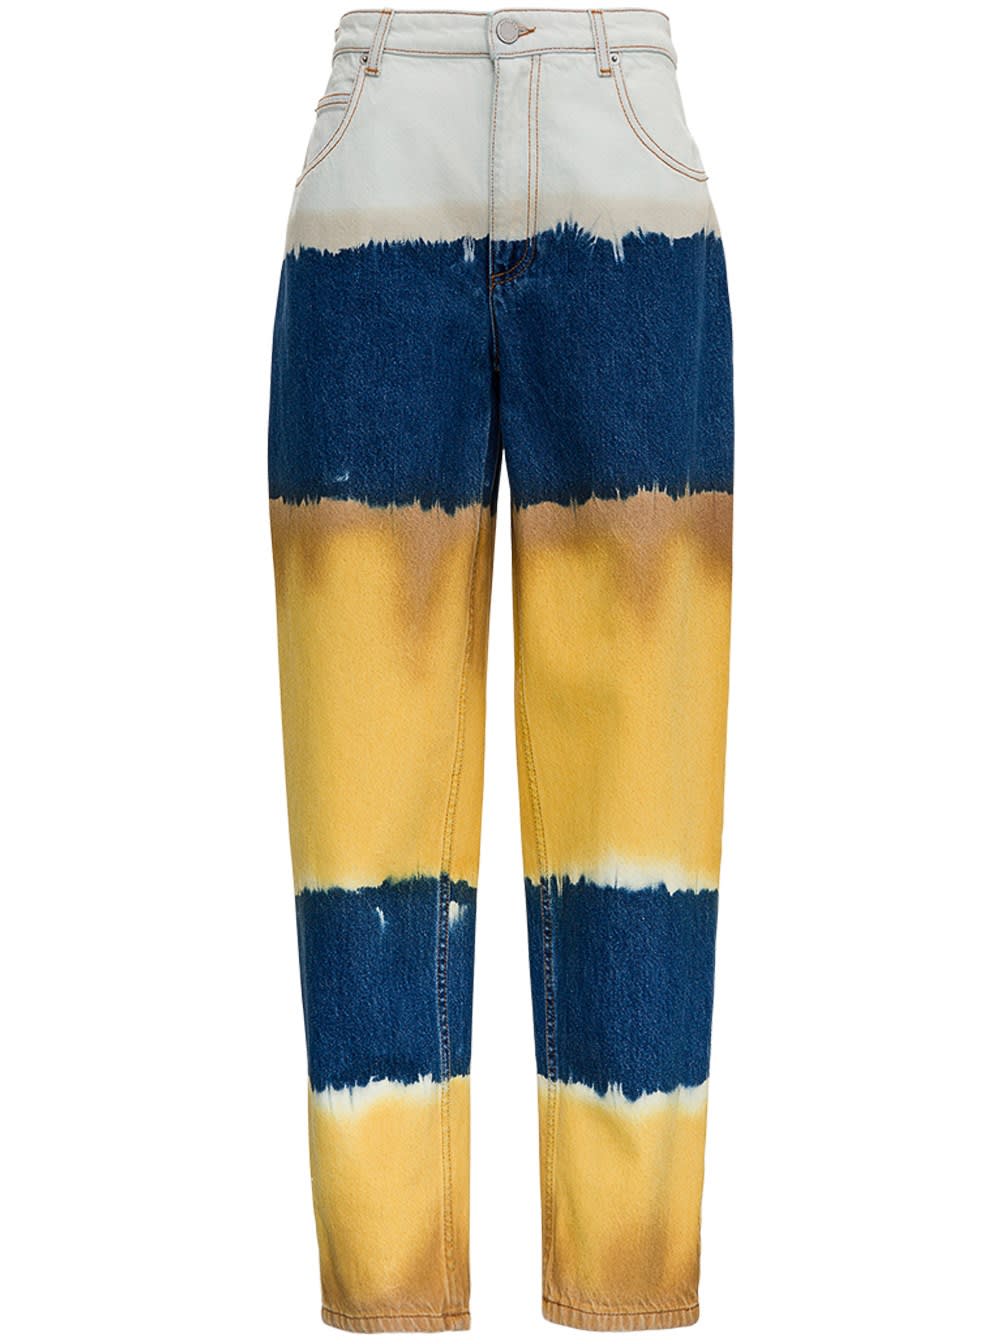 Alberta Ferretti Oceanic Tie Dye I Love Summer Jeans